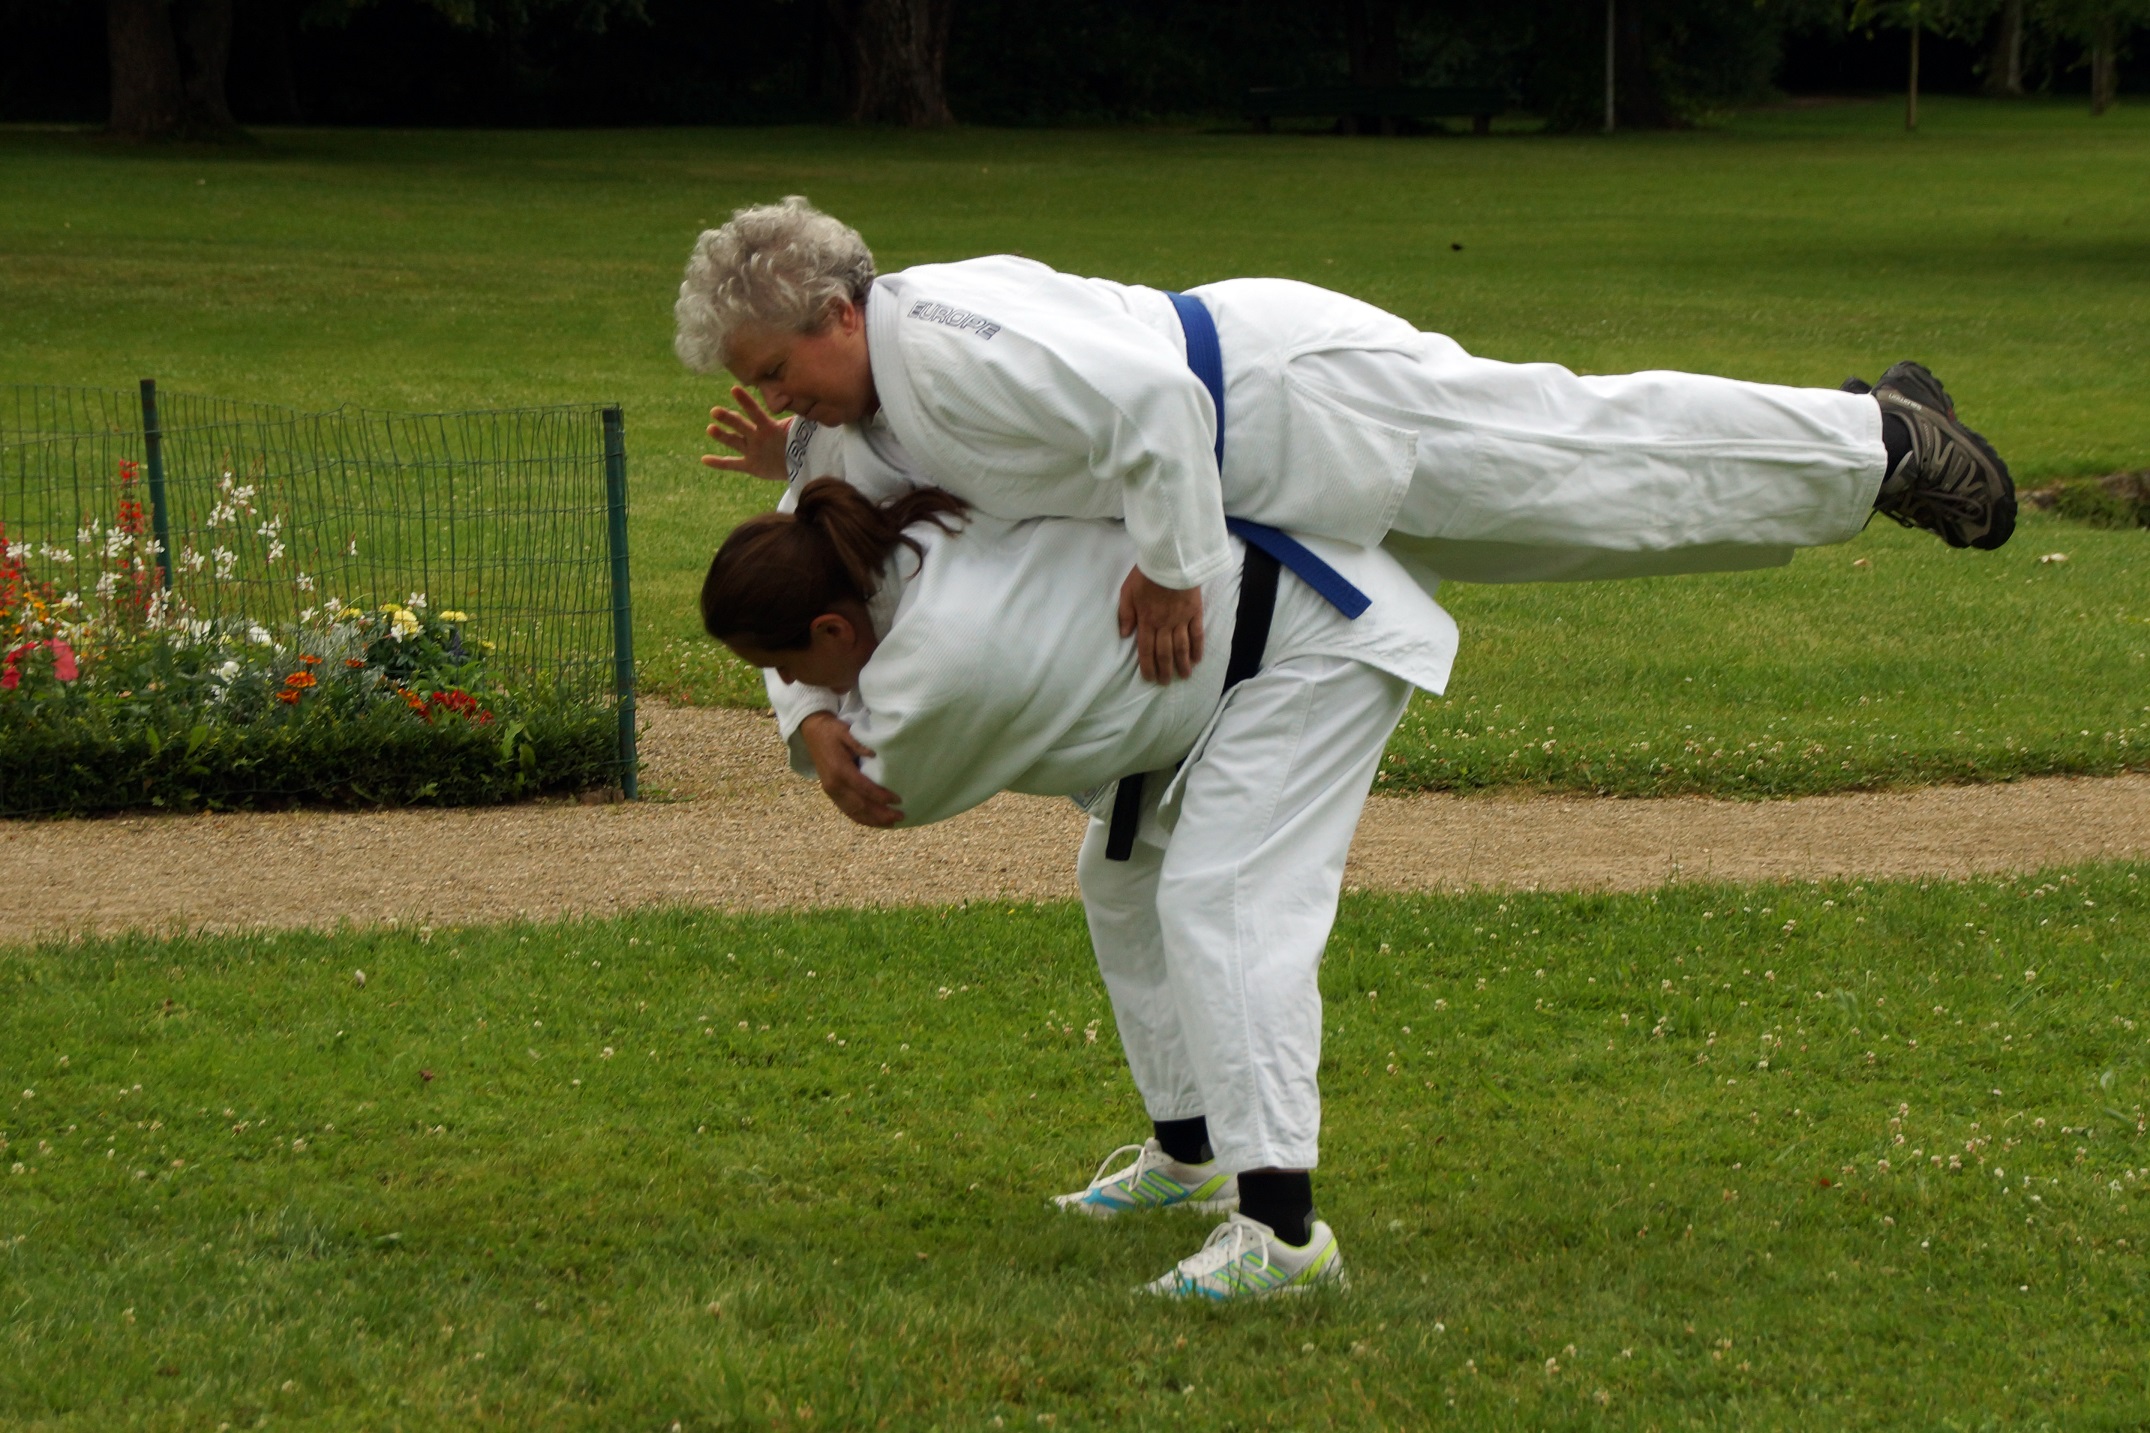 Bild: Ein Judoka liegt mit dem Bauch auf dem Rücken eines andren Judokas, das sich nach vorne beugt.